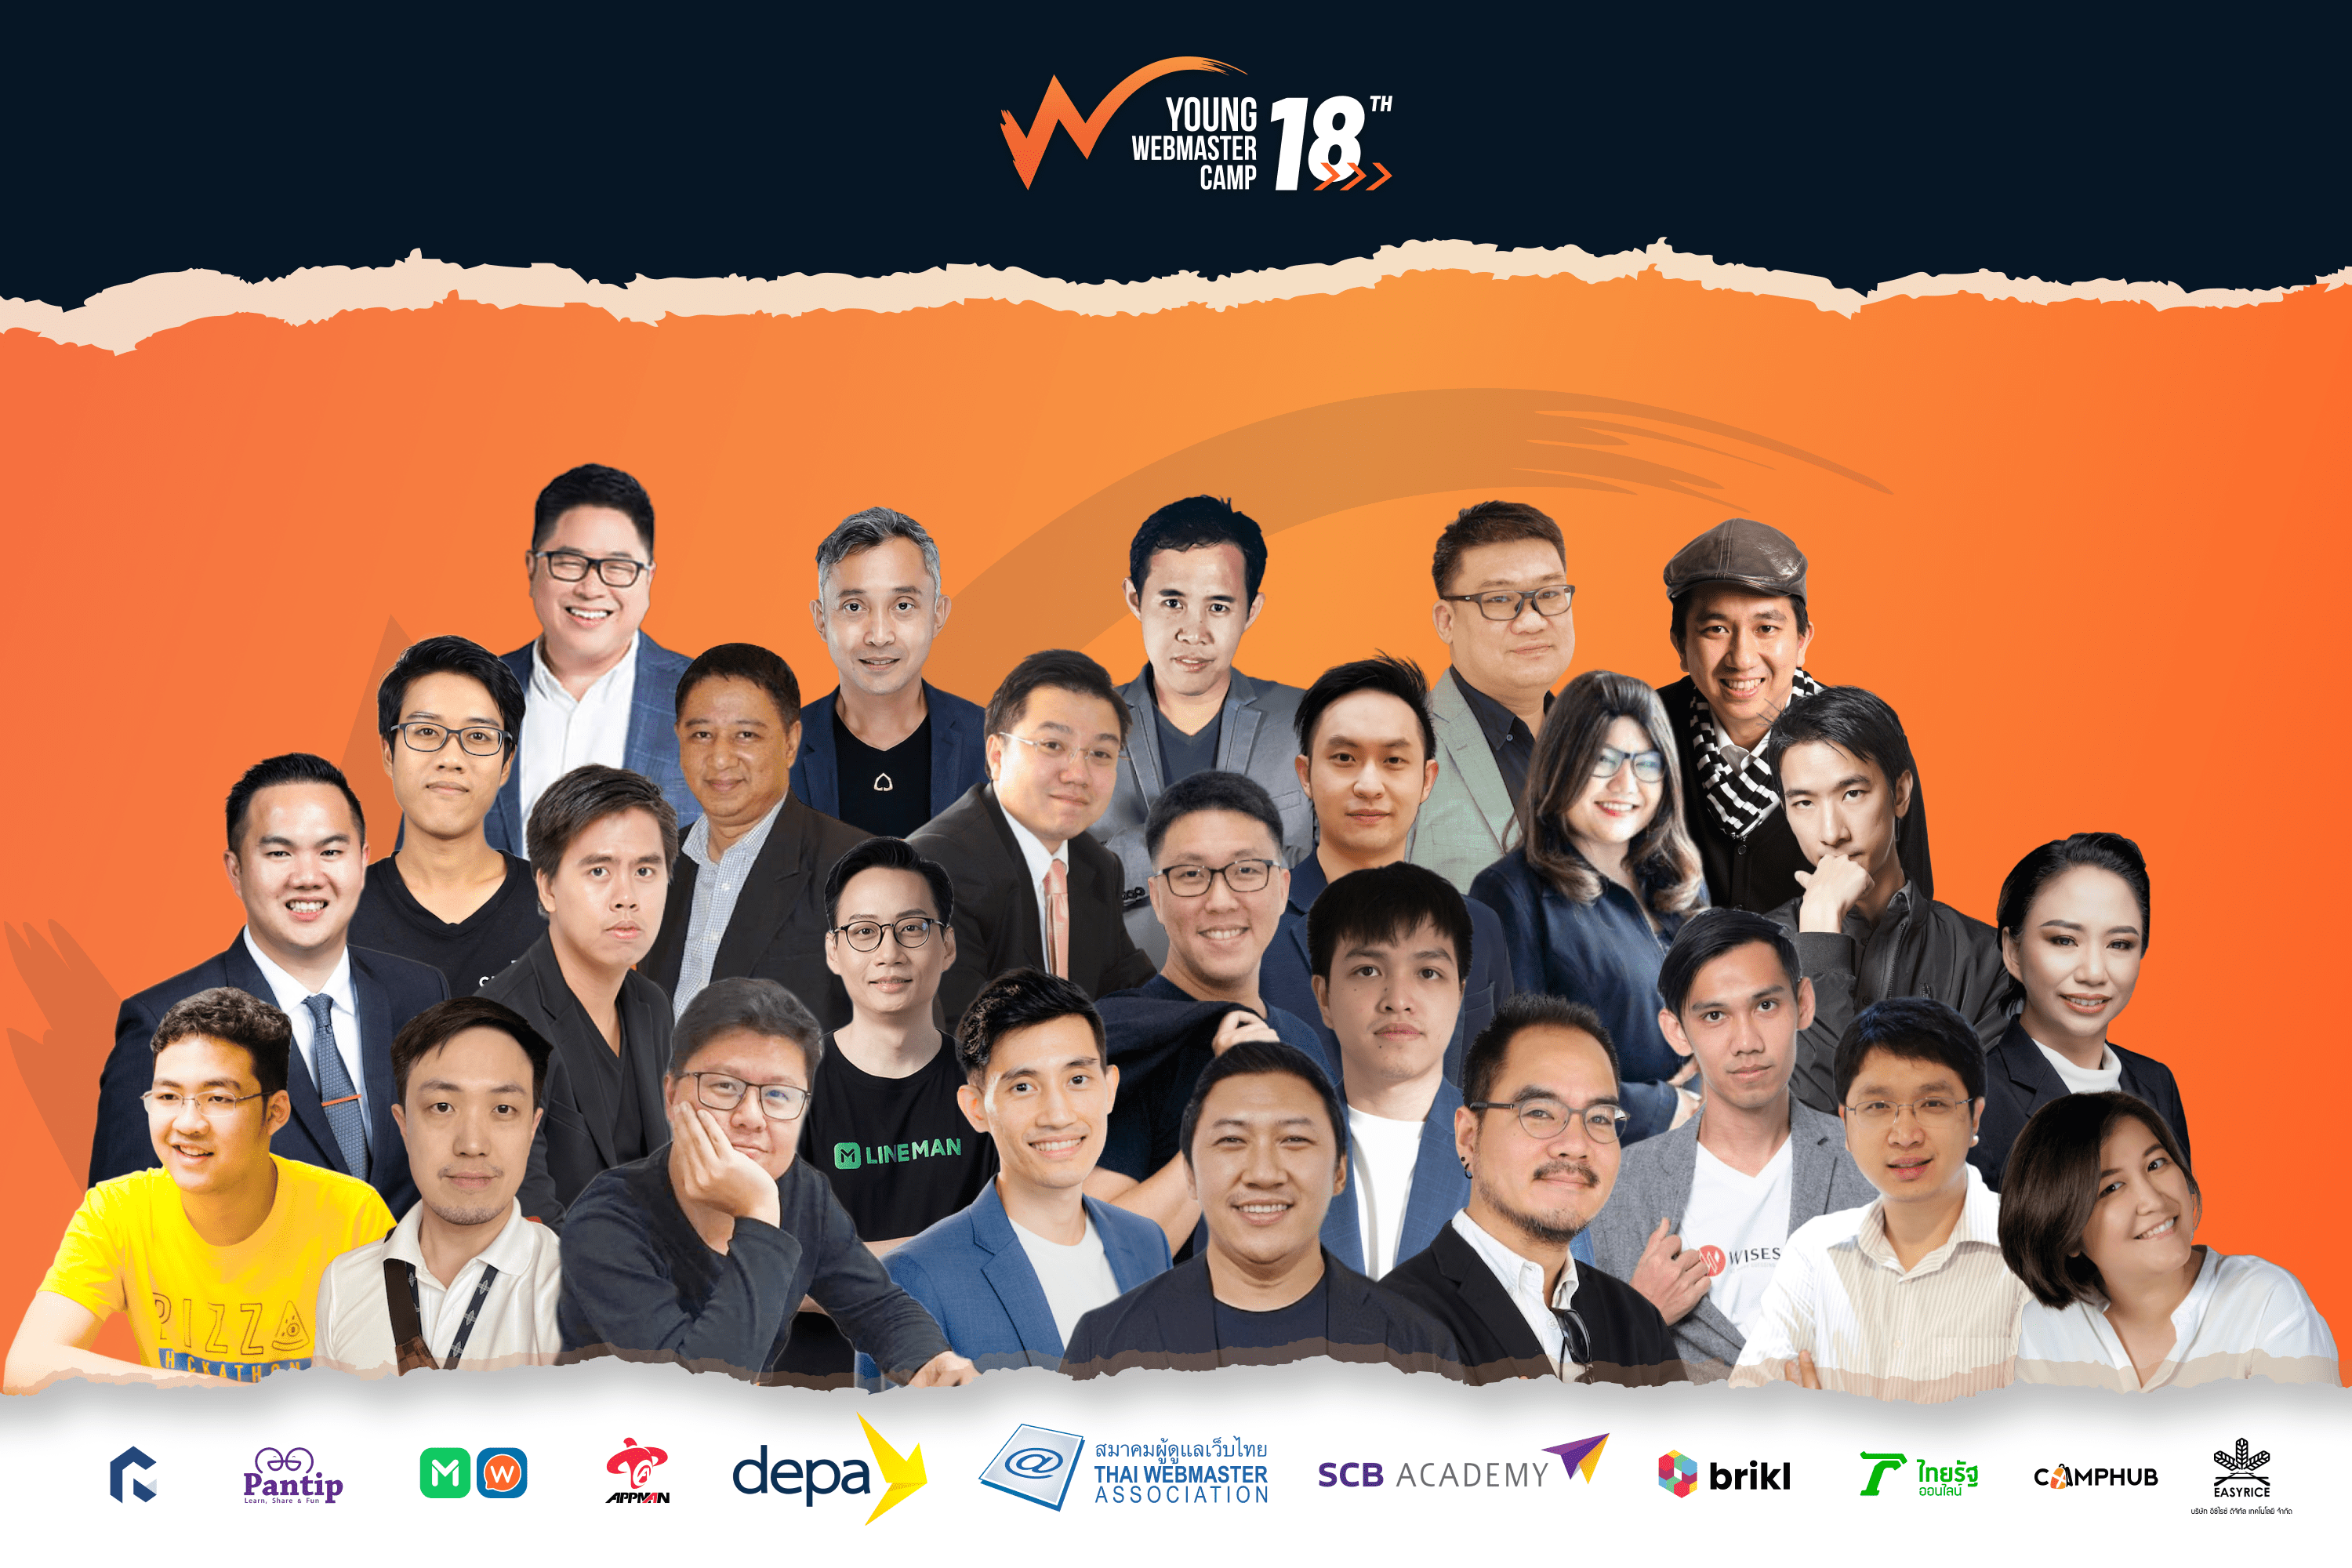 สมาคมผู้ดูแลเว็บไทย ปรับตัวรับโควิด จัดค่ายใหญ่ด้านดิจิทัล "Young Webmaster Camp ปีที่ 18" ออนไลน์ครั้งแรก